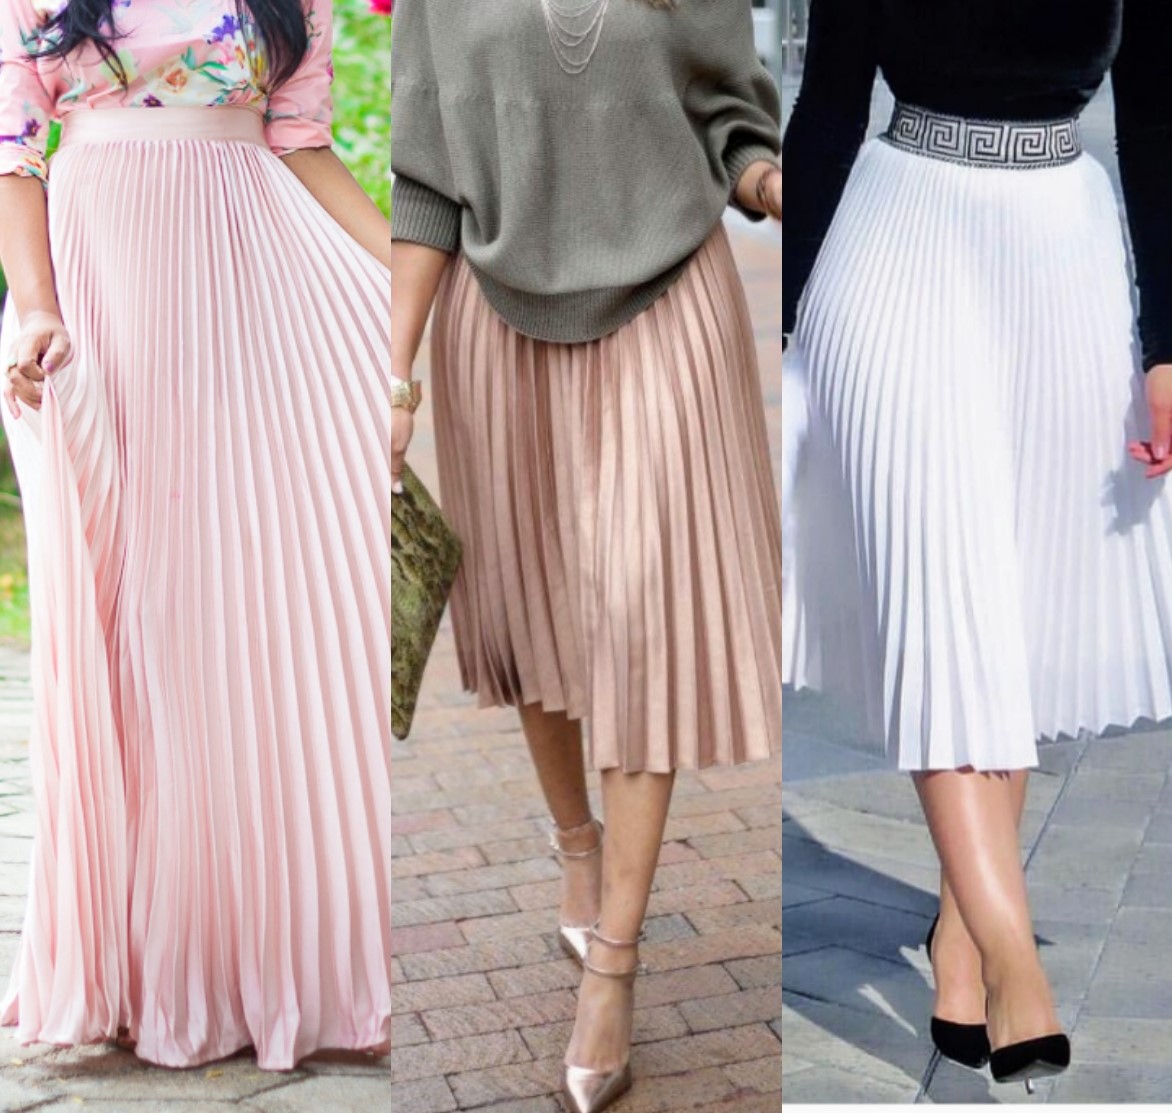 How Do I Style a Pleated Skirt?